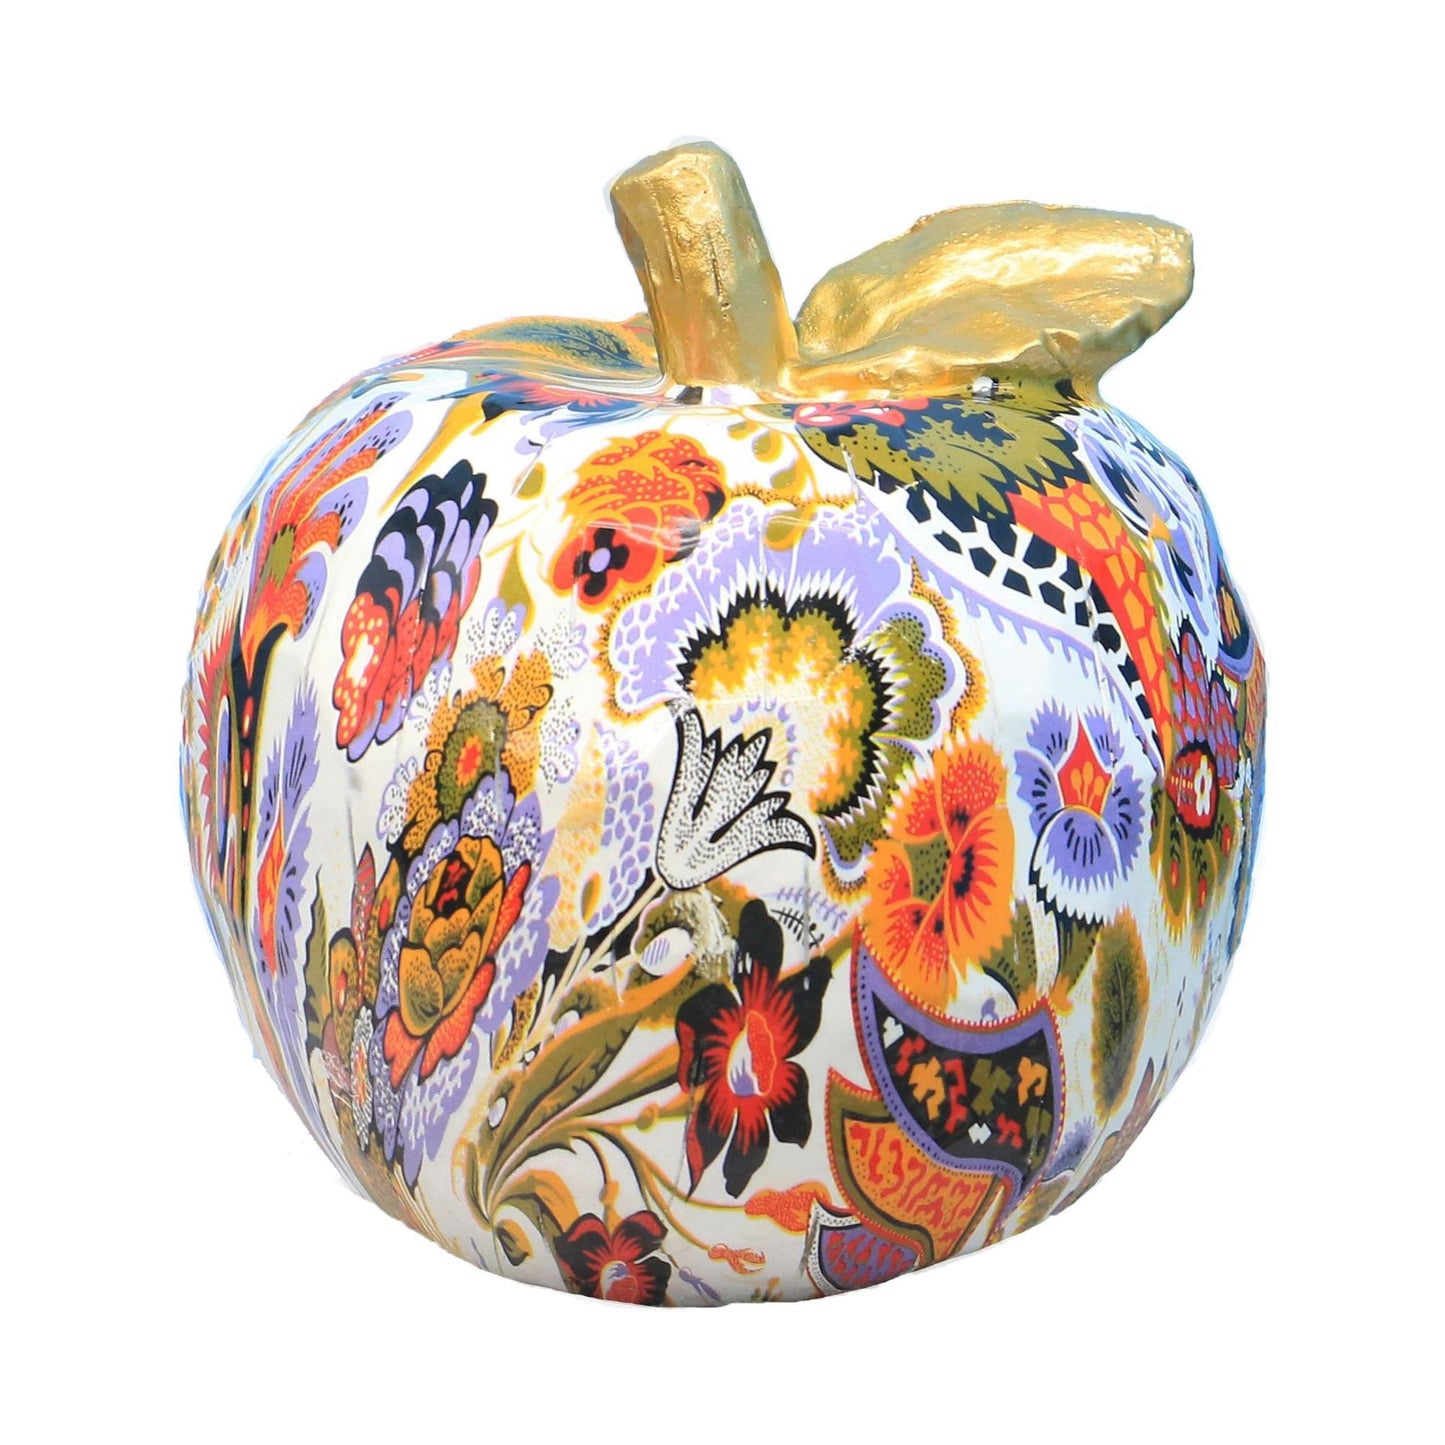 創造的なカラフルなリンゴの装飾品樹脂クラフトホームリビングルームキャビネットデスクトップフルーツ装飾品のお土産ワインラッククラフト